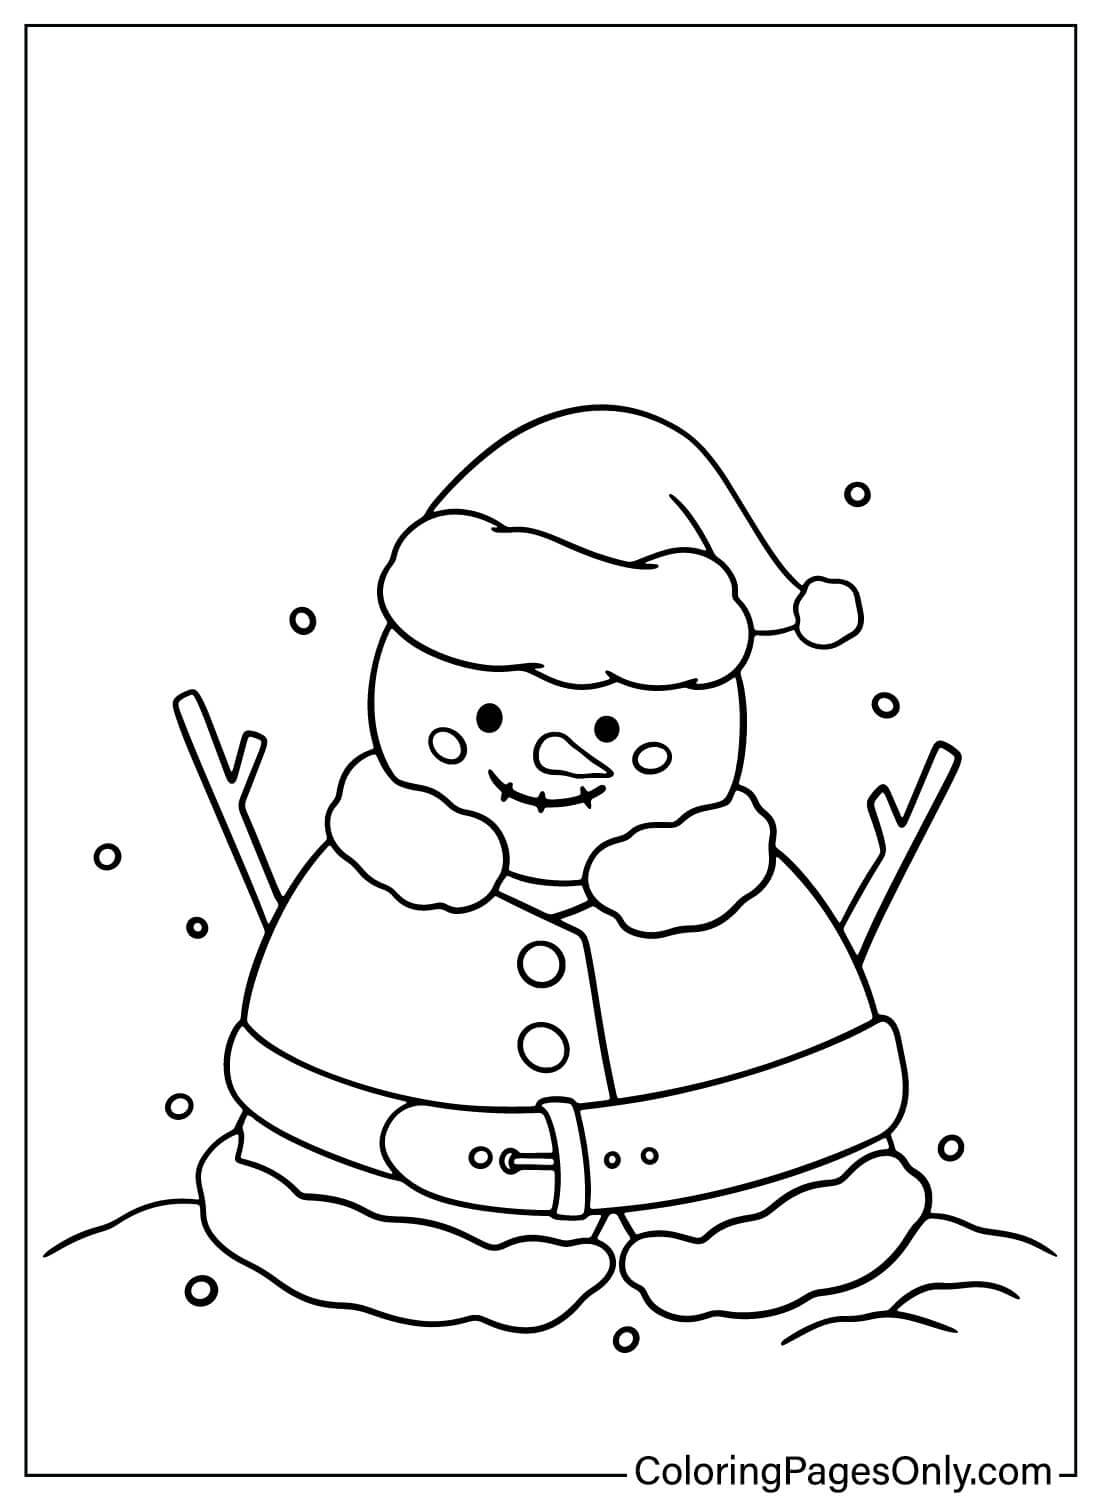 Página colorida do boneco de neve para impressão